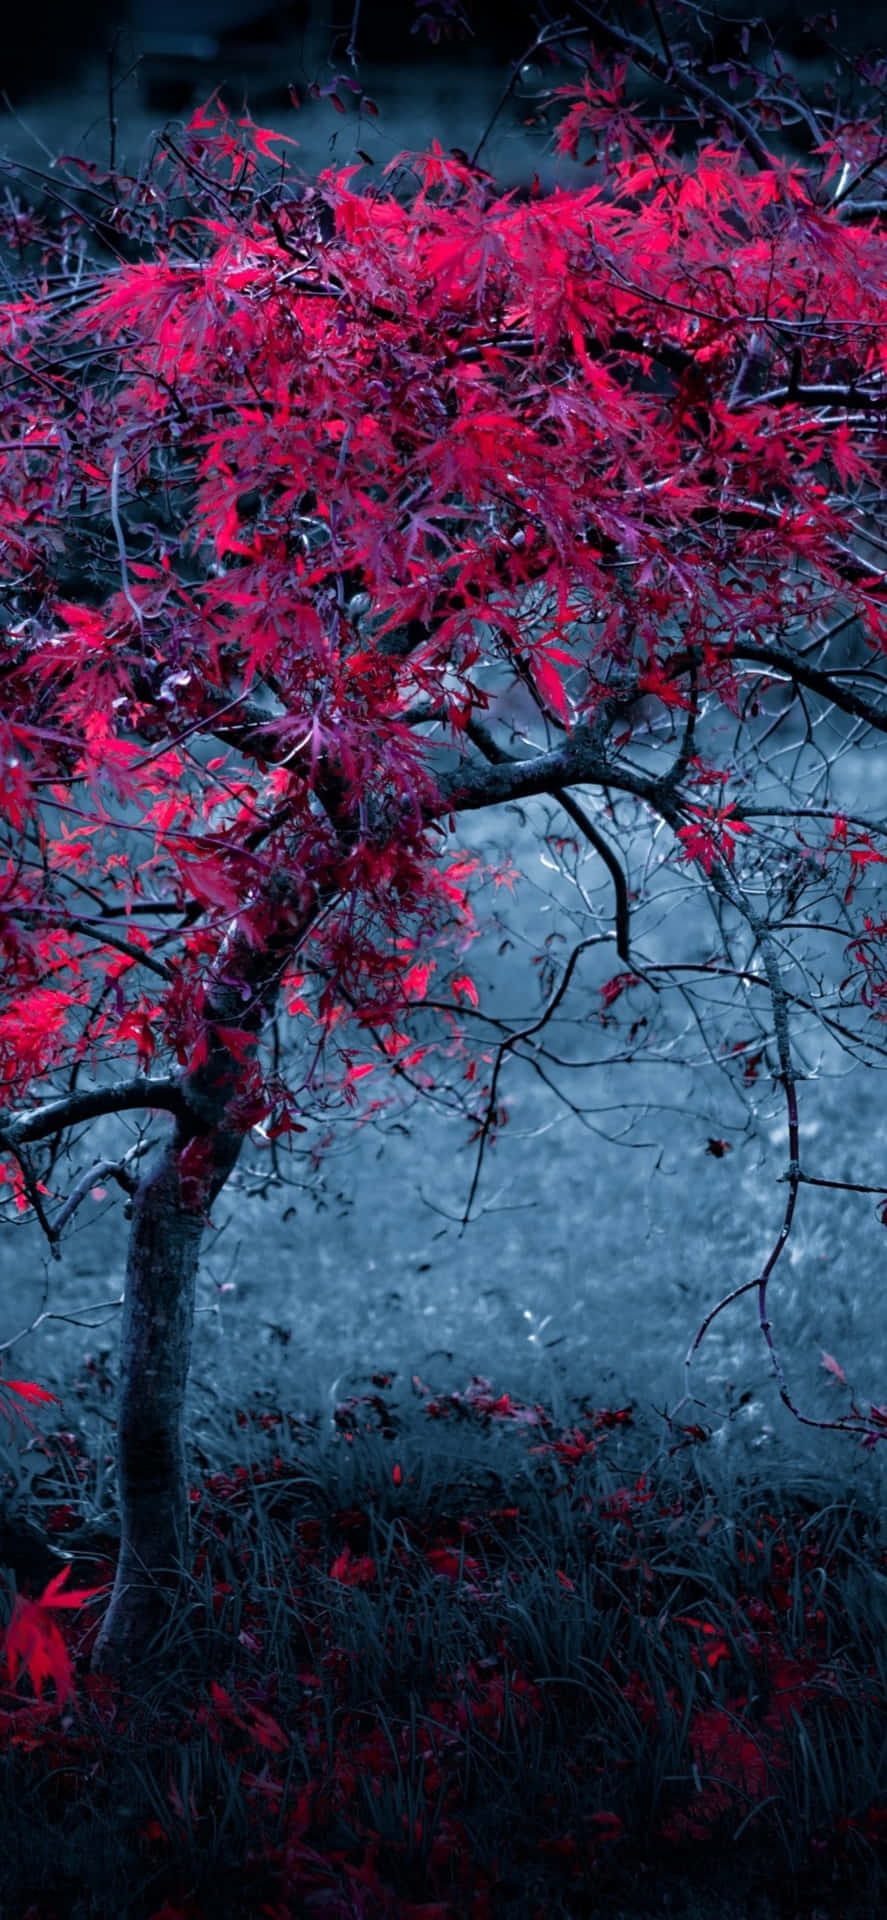 Árvorevermelha Em Pé Contra O Céu Papel de Parede